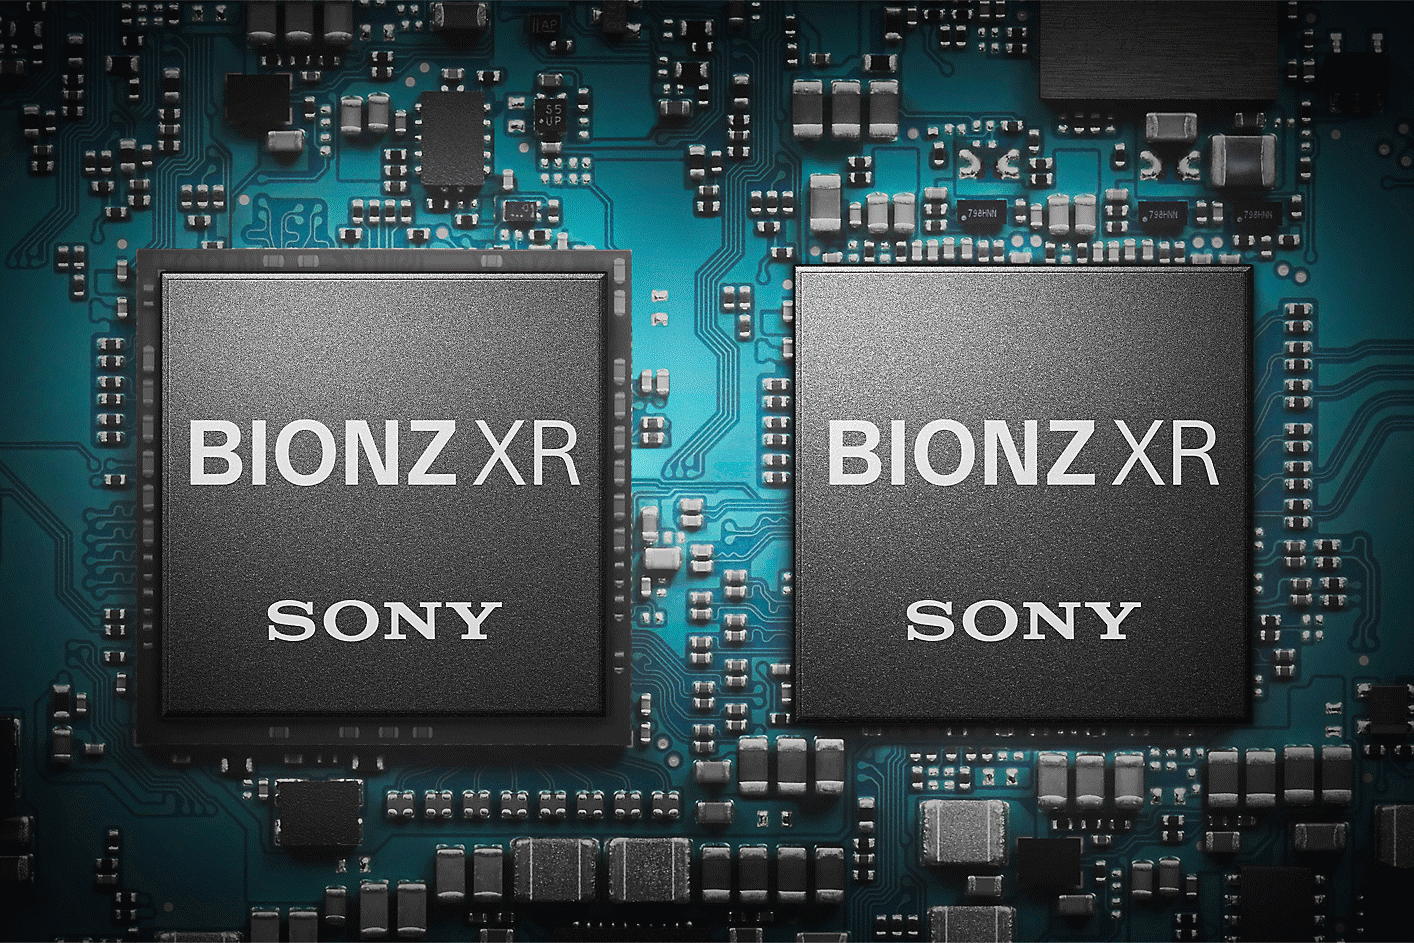 ภาพของระบบประมวลผลภาพ BIONZ XR บนอุปกรณ์